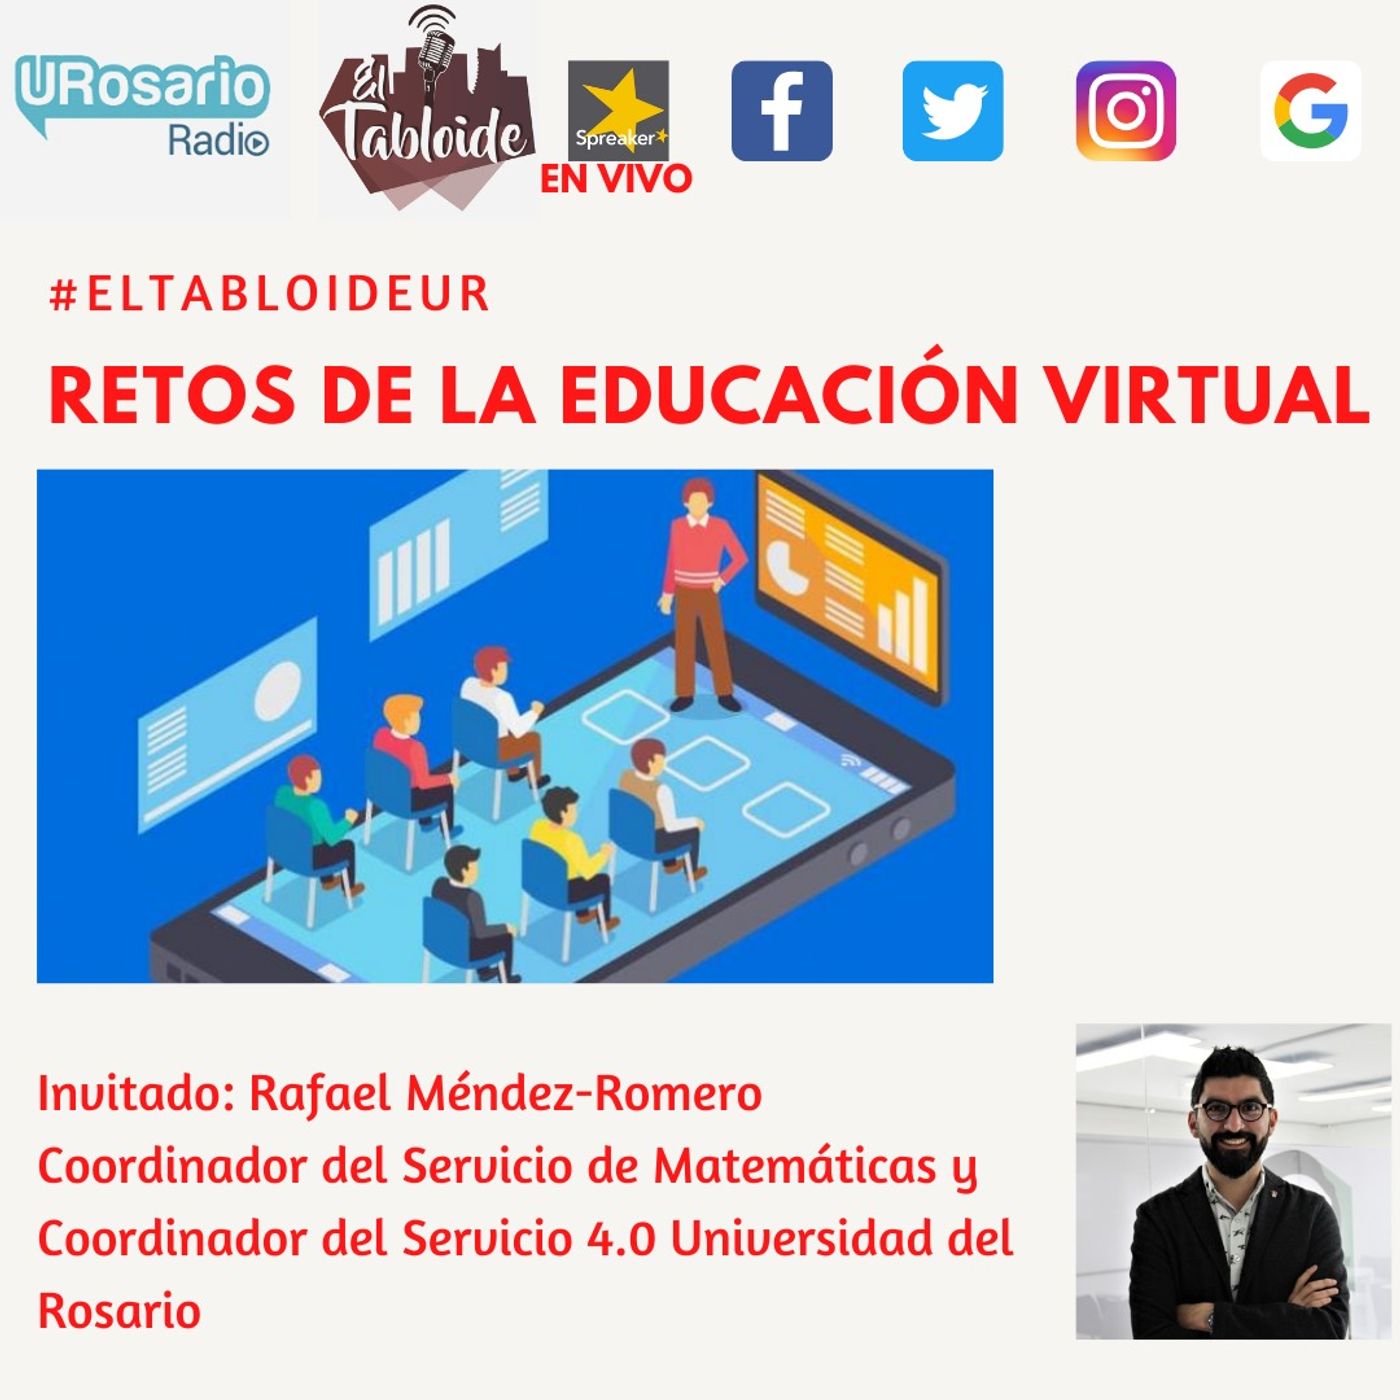 Reto de la educación virtual